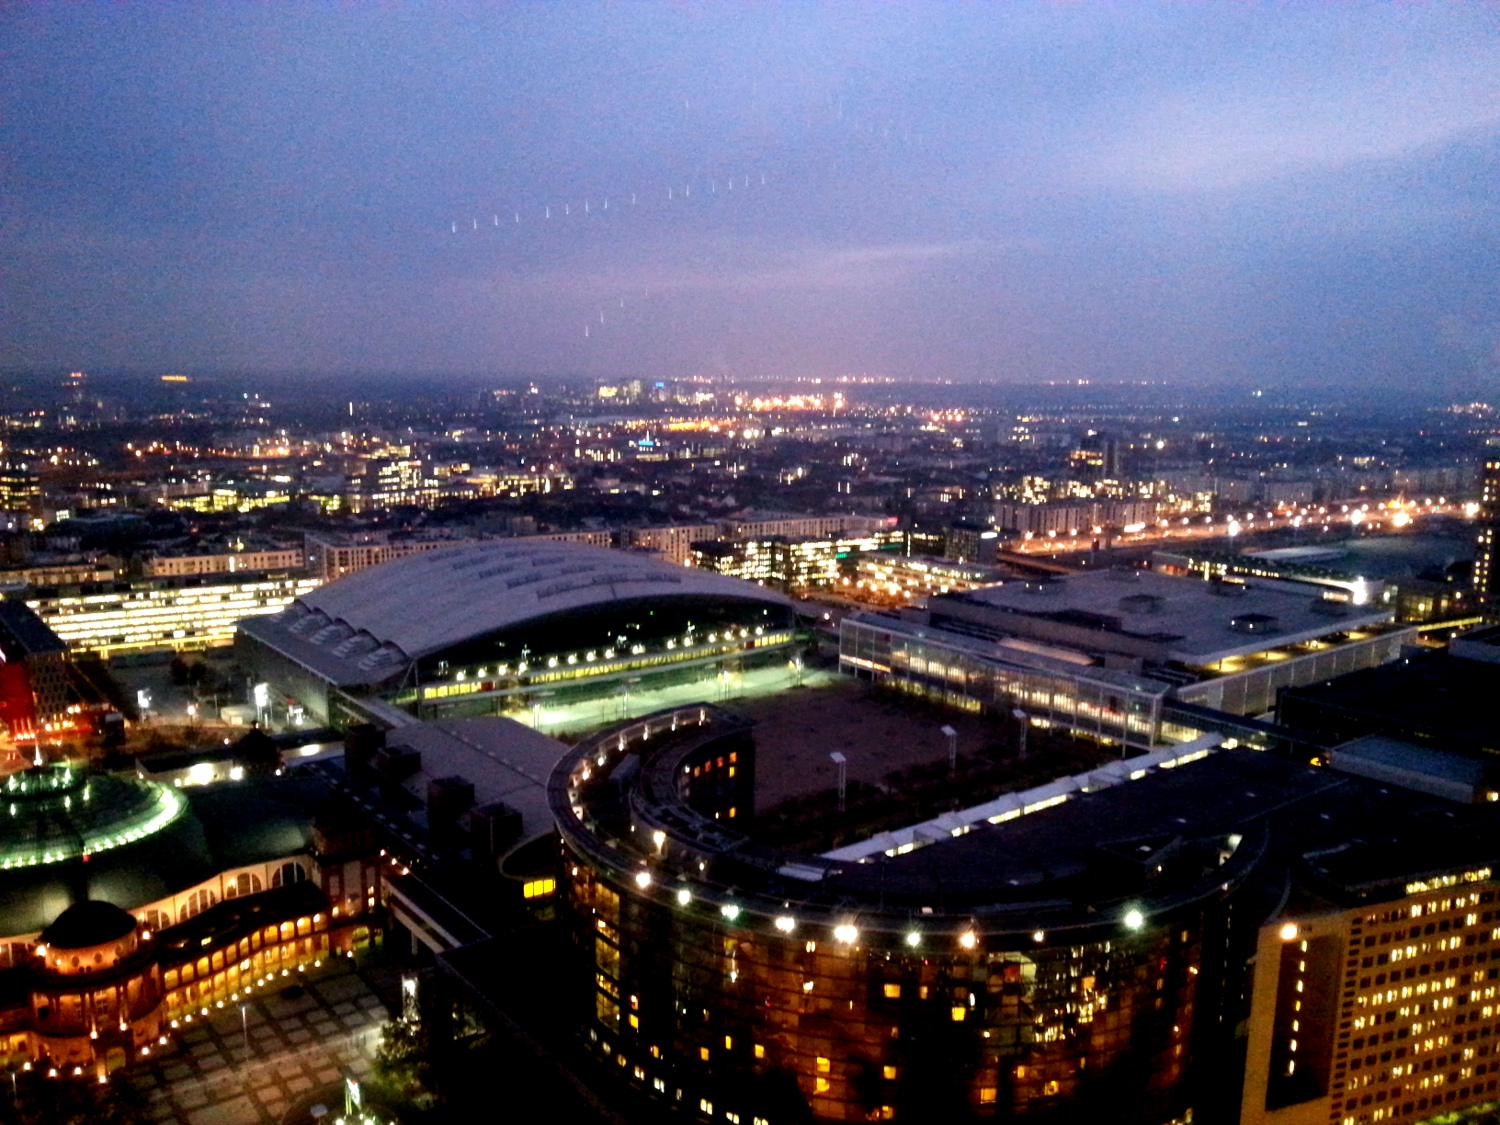 Frankfurt at dusk